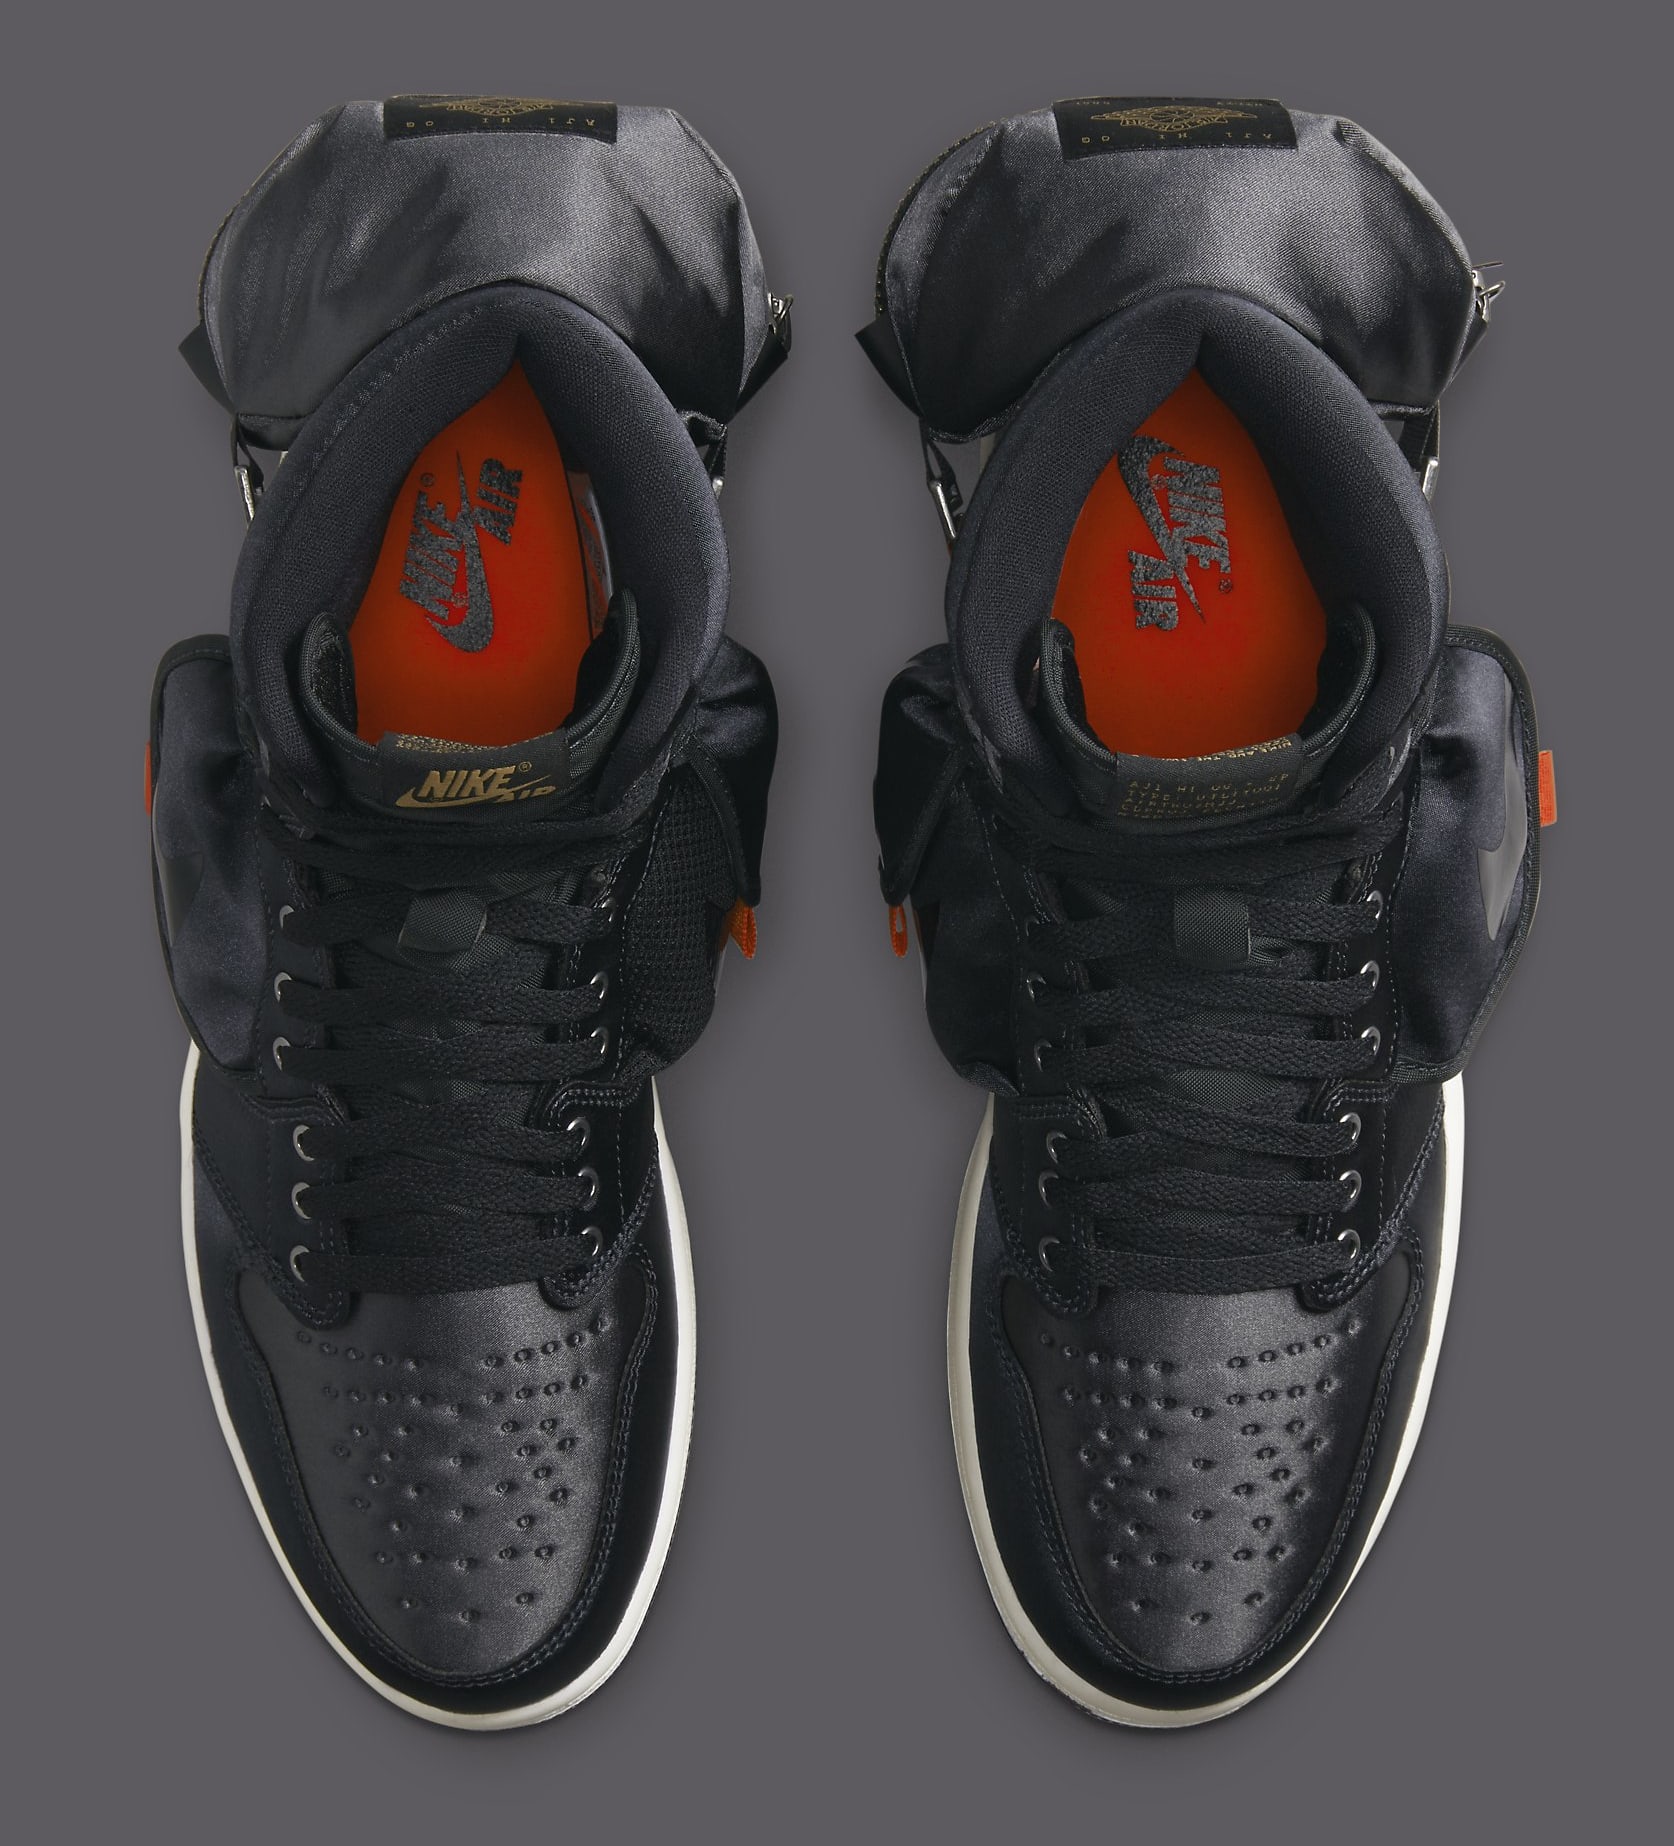 Nike Air Jordan 1 High OG Stash 2022 Men's Shoes Size 6.5 Limited Edition